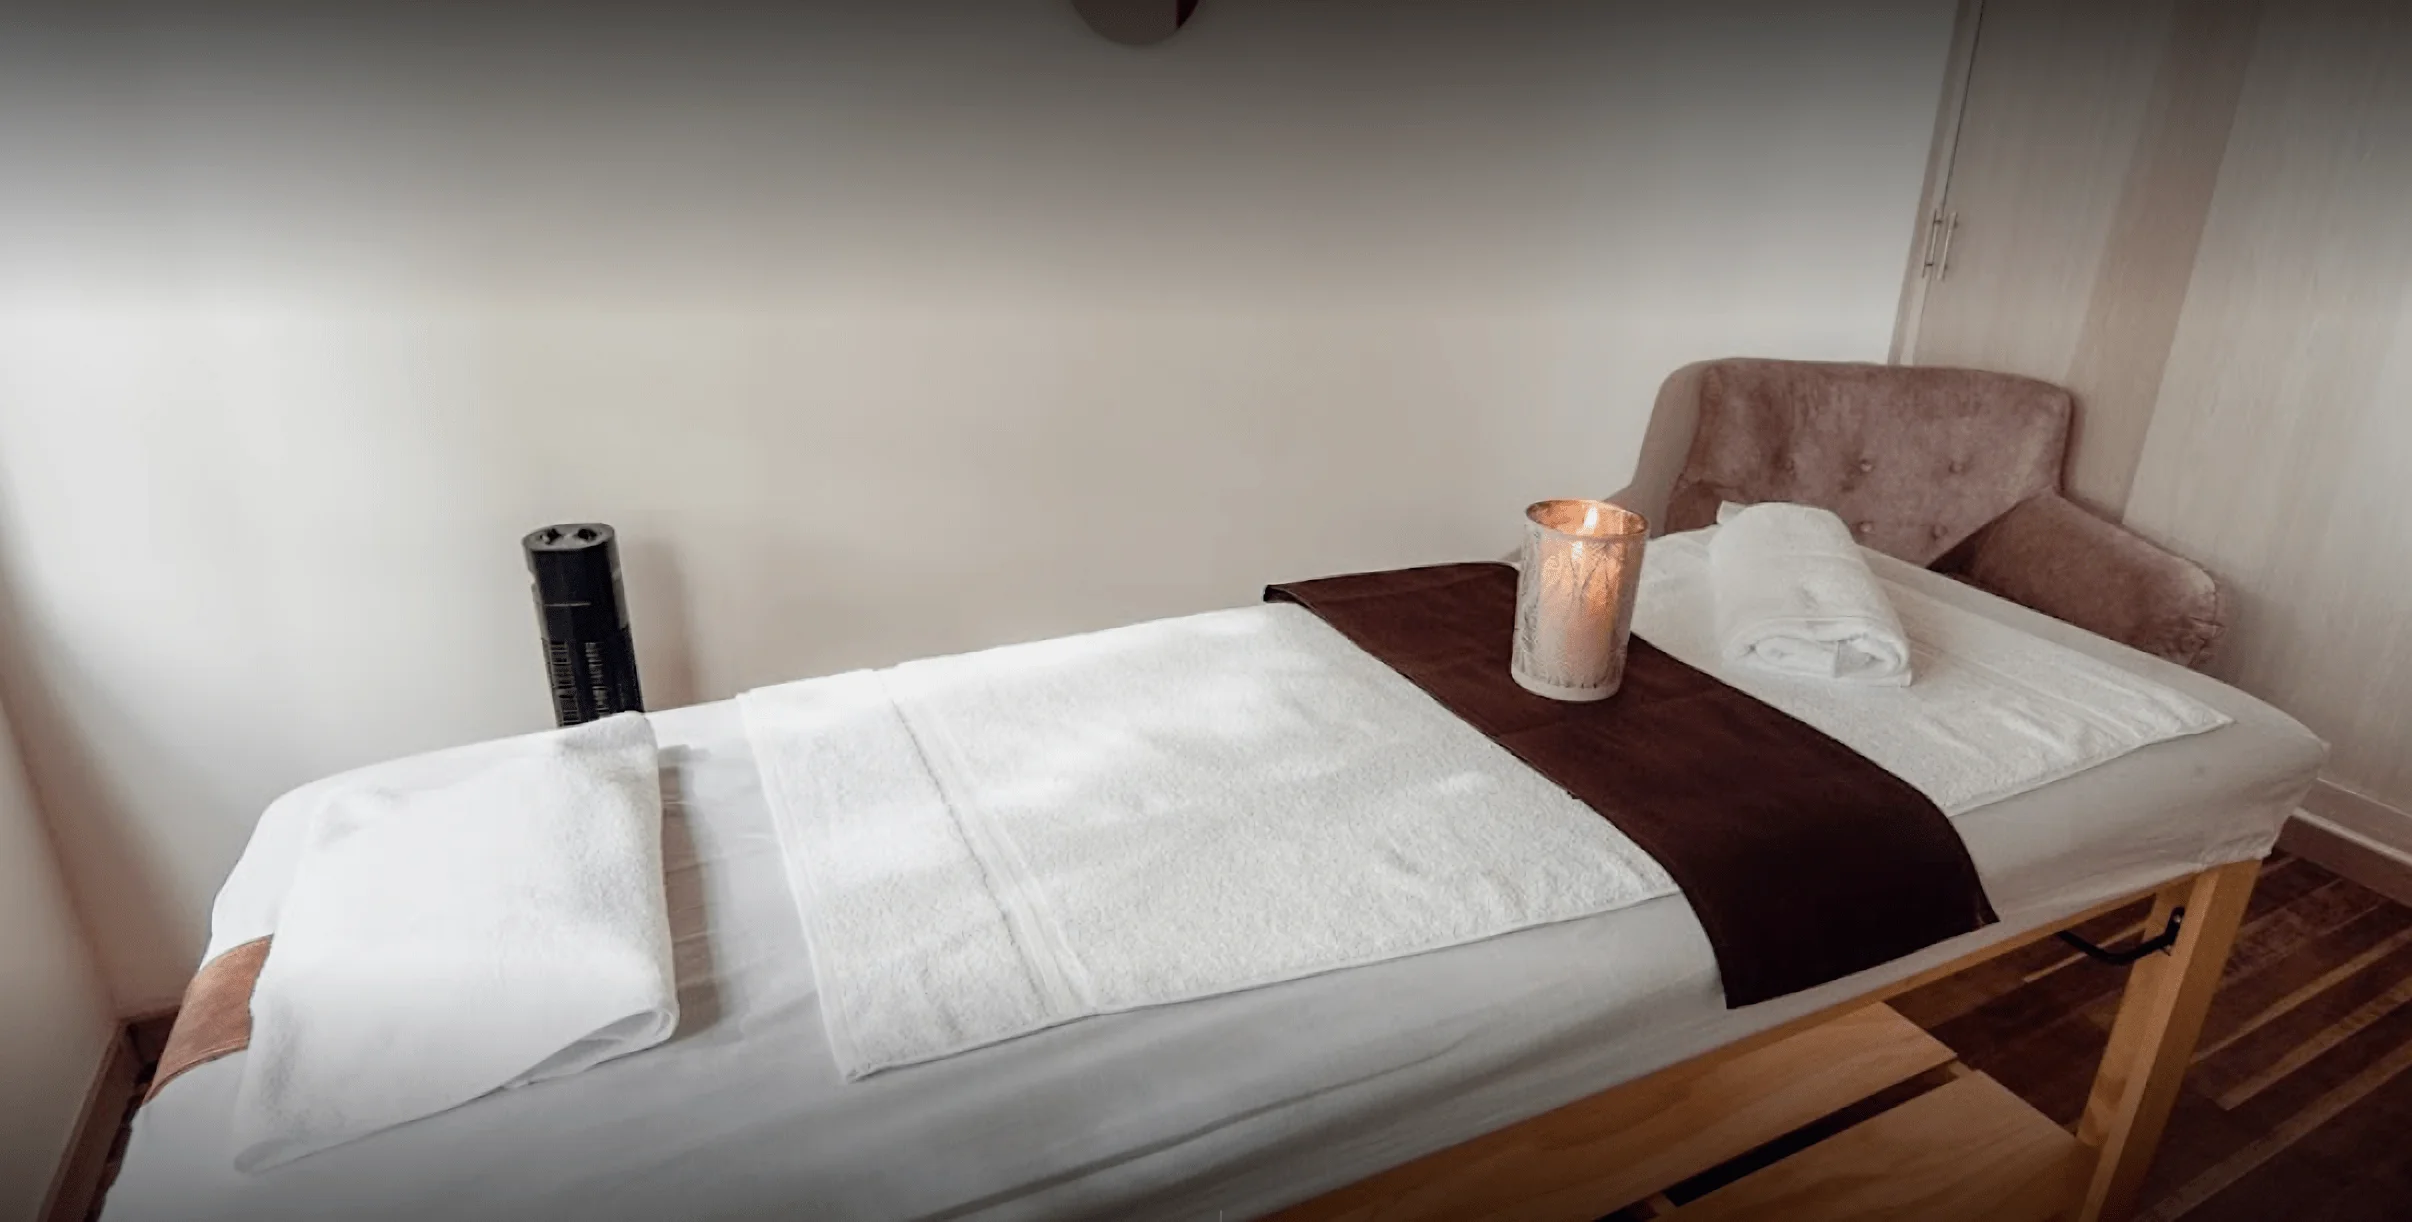 Spa-atma-spa-relaxing-massage-in-el-poblado-medellin-5913